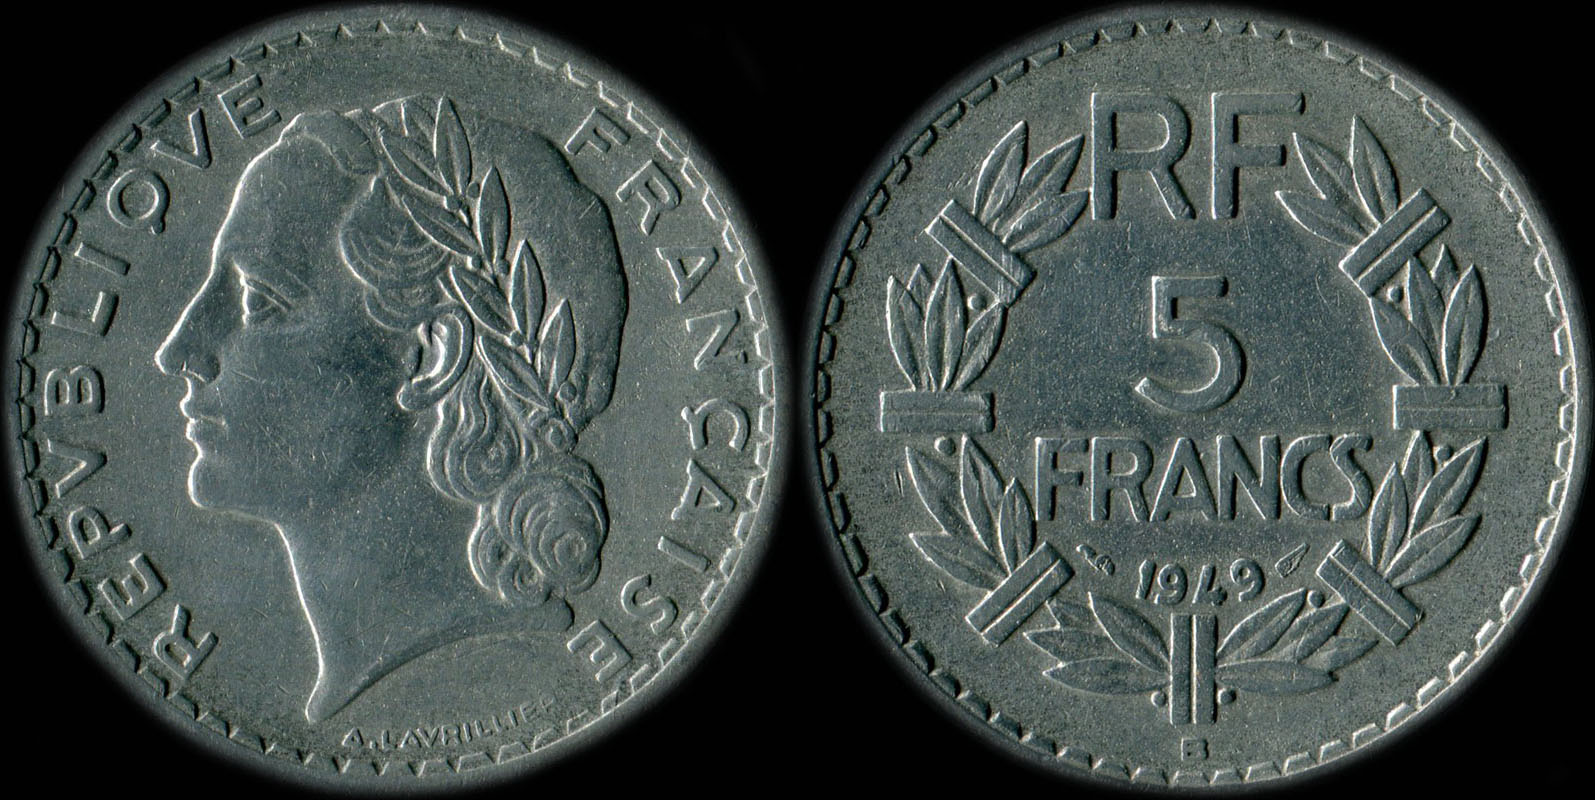 Pice de 5 francs Lavrillier 1949B aluminium